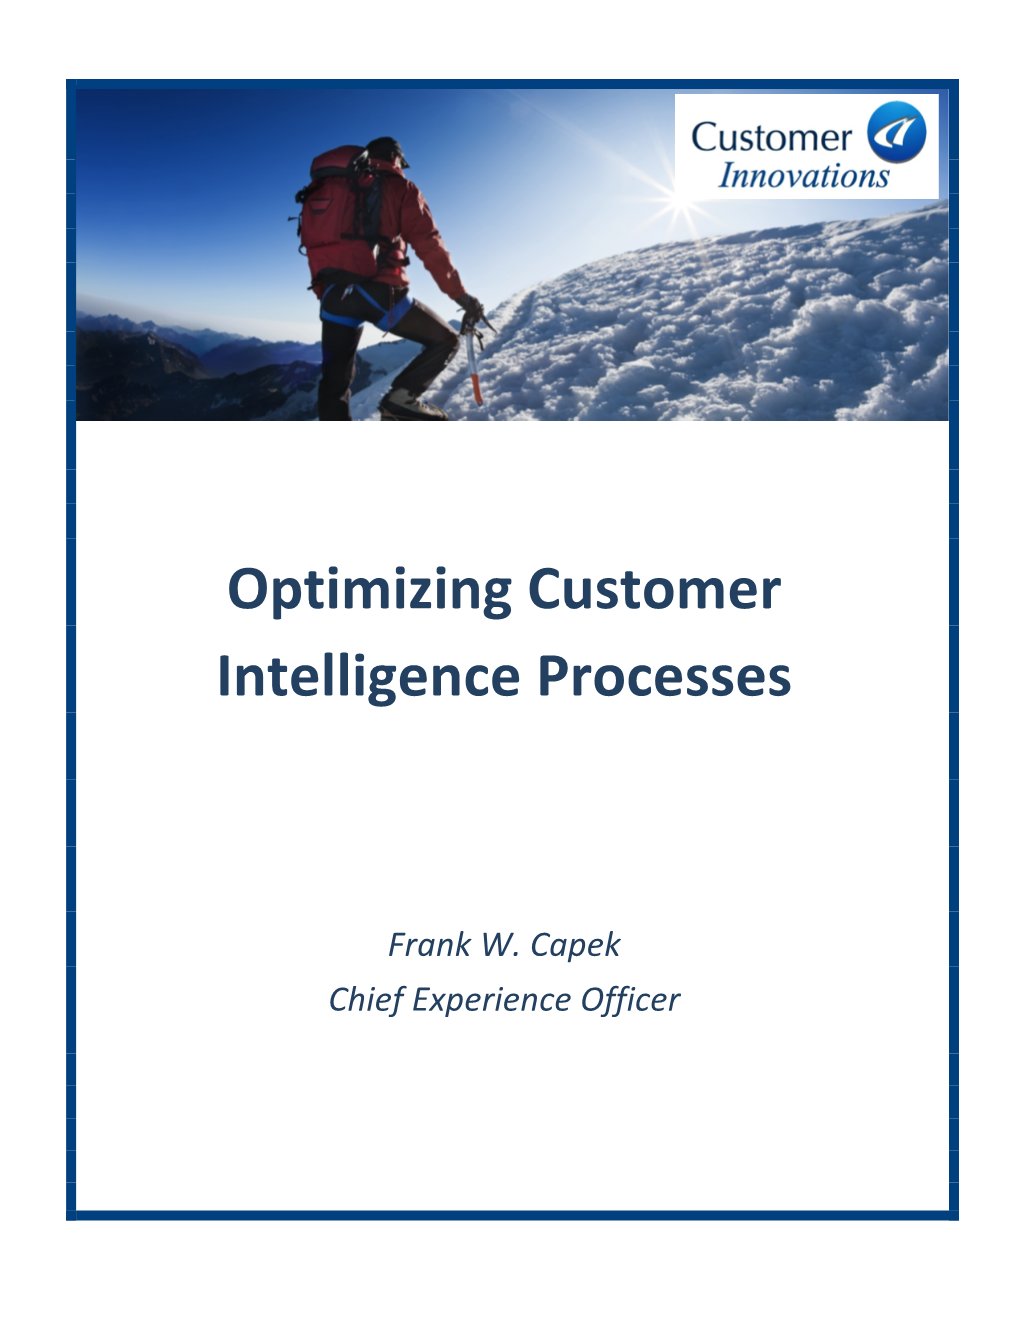 Optimizing Customer Intelligence Processes